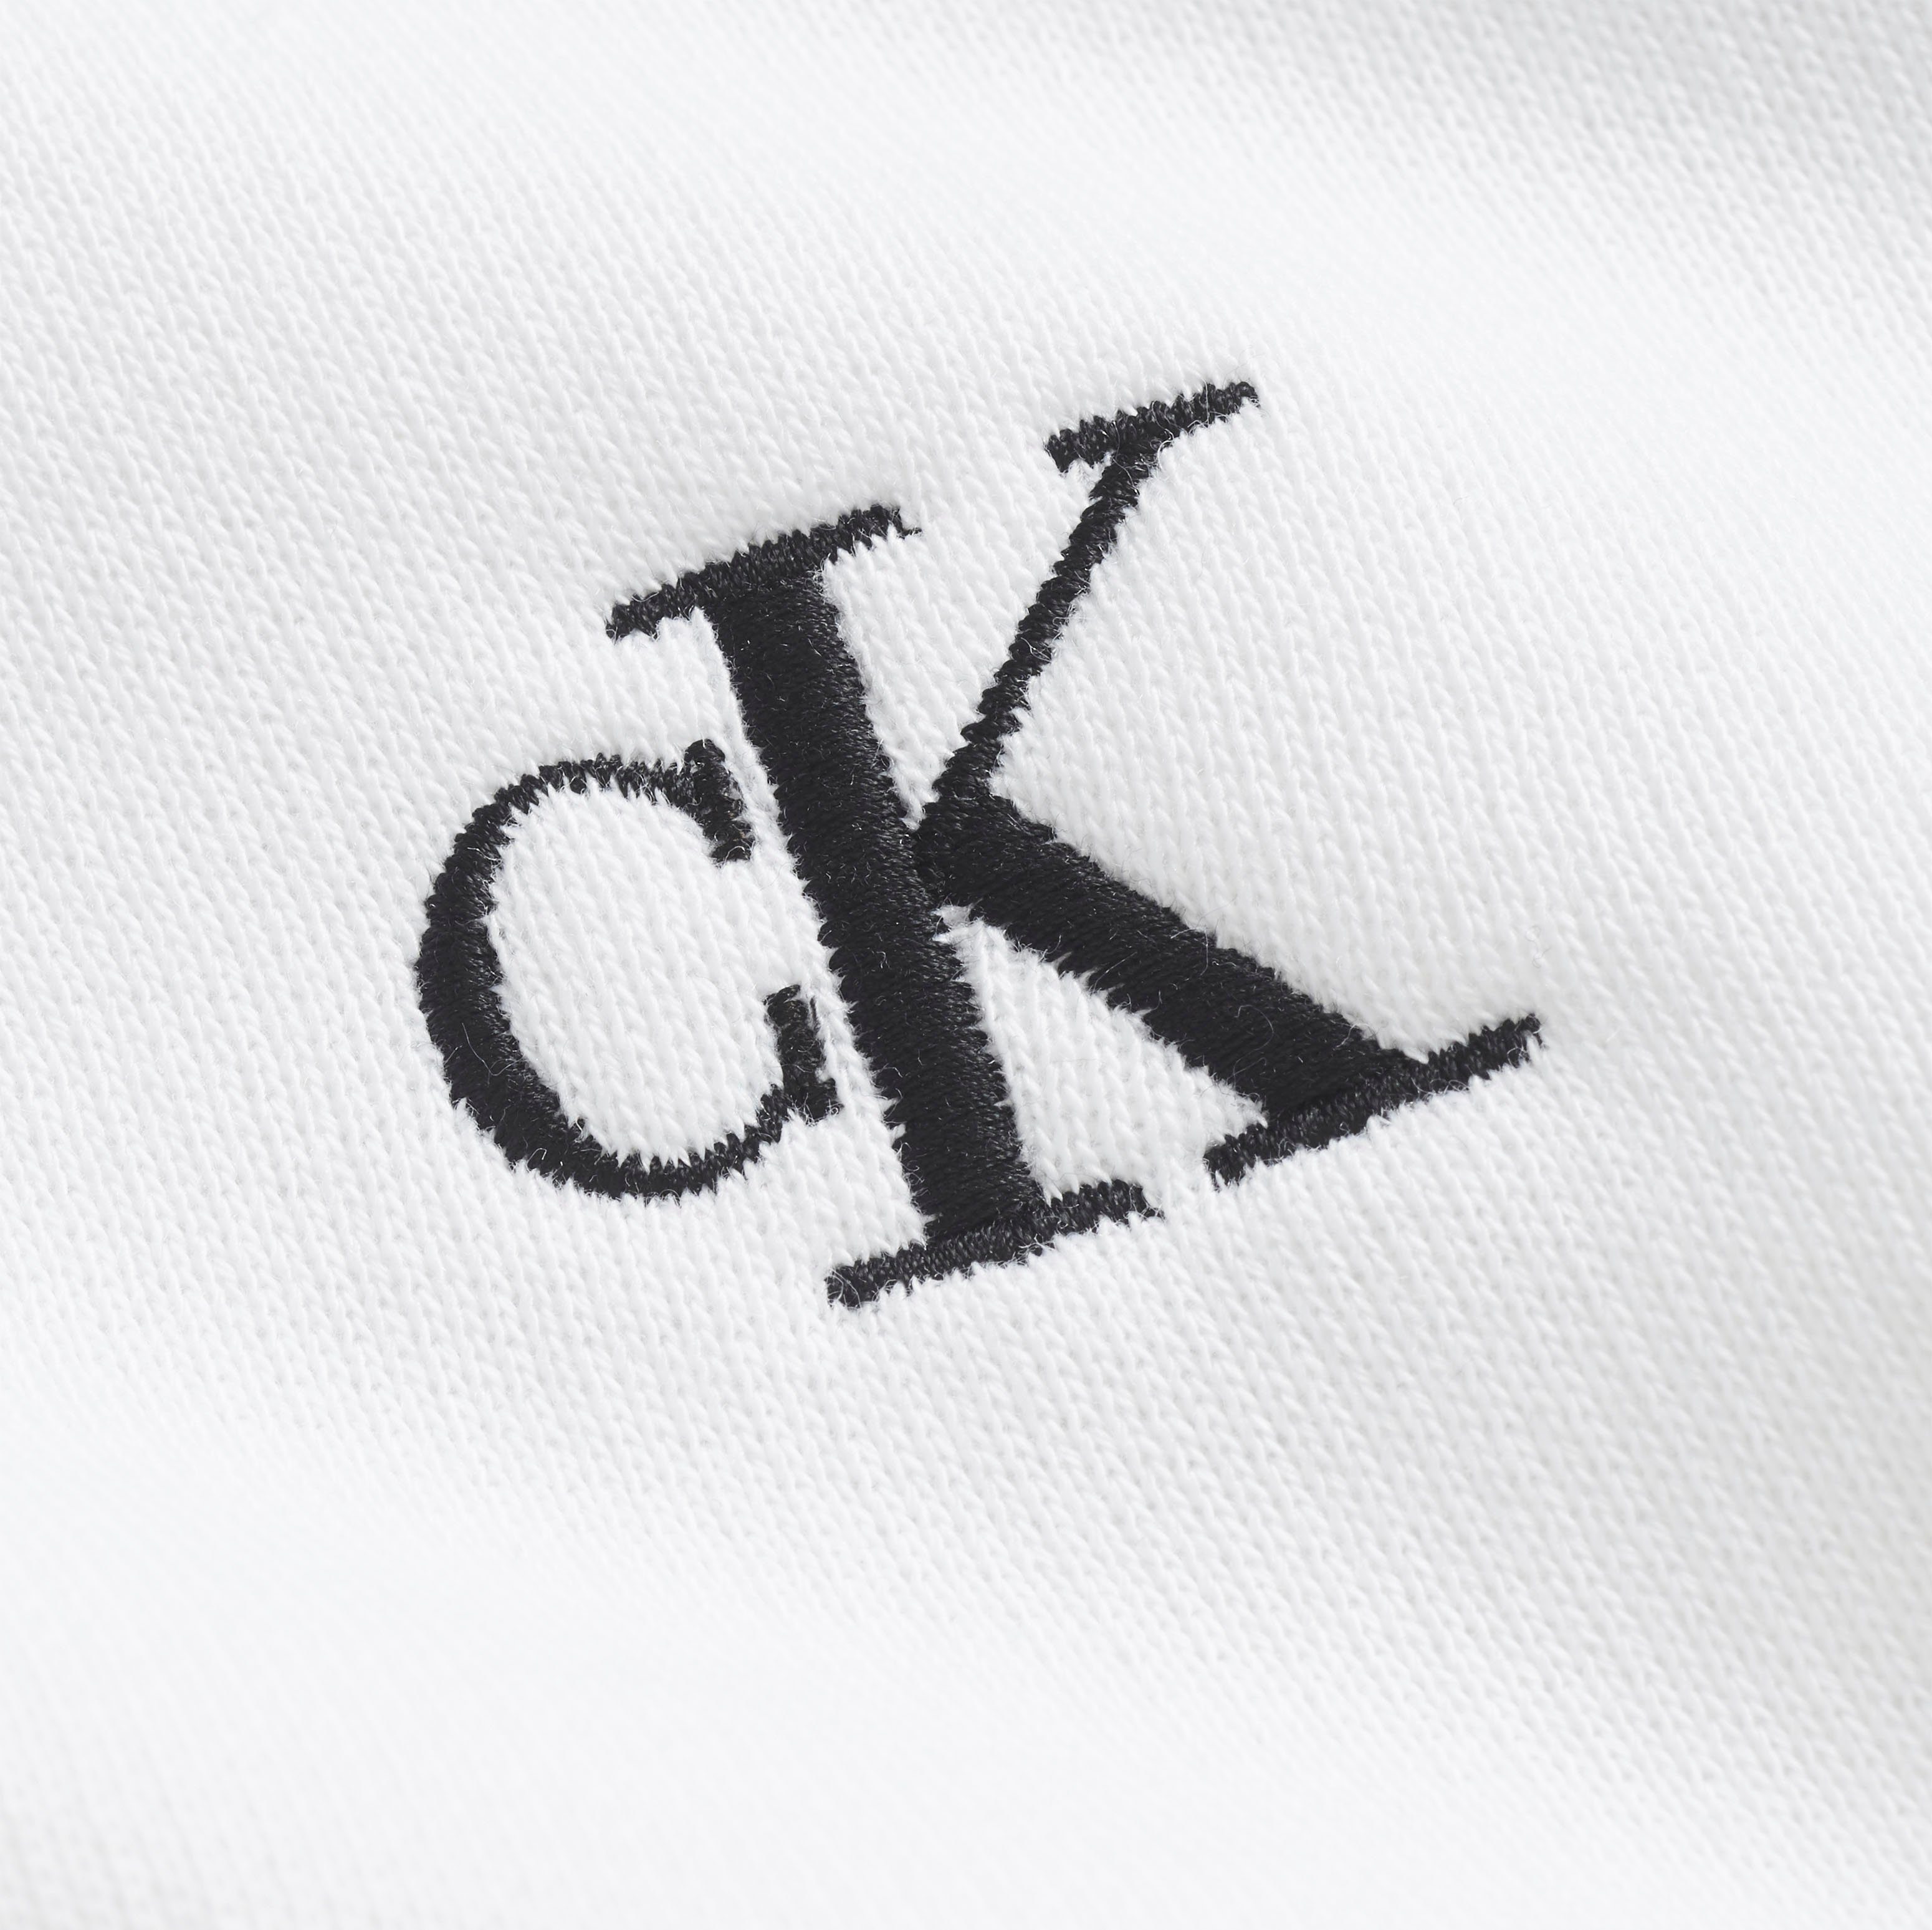 Calvin Klein Jeans CK Bright Kapuzensweatshirt White ESSENTIAL HOODIE